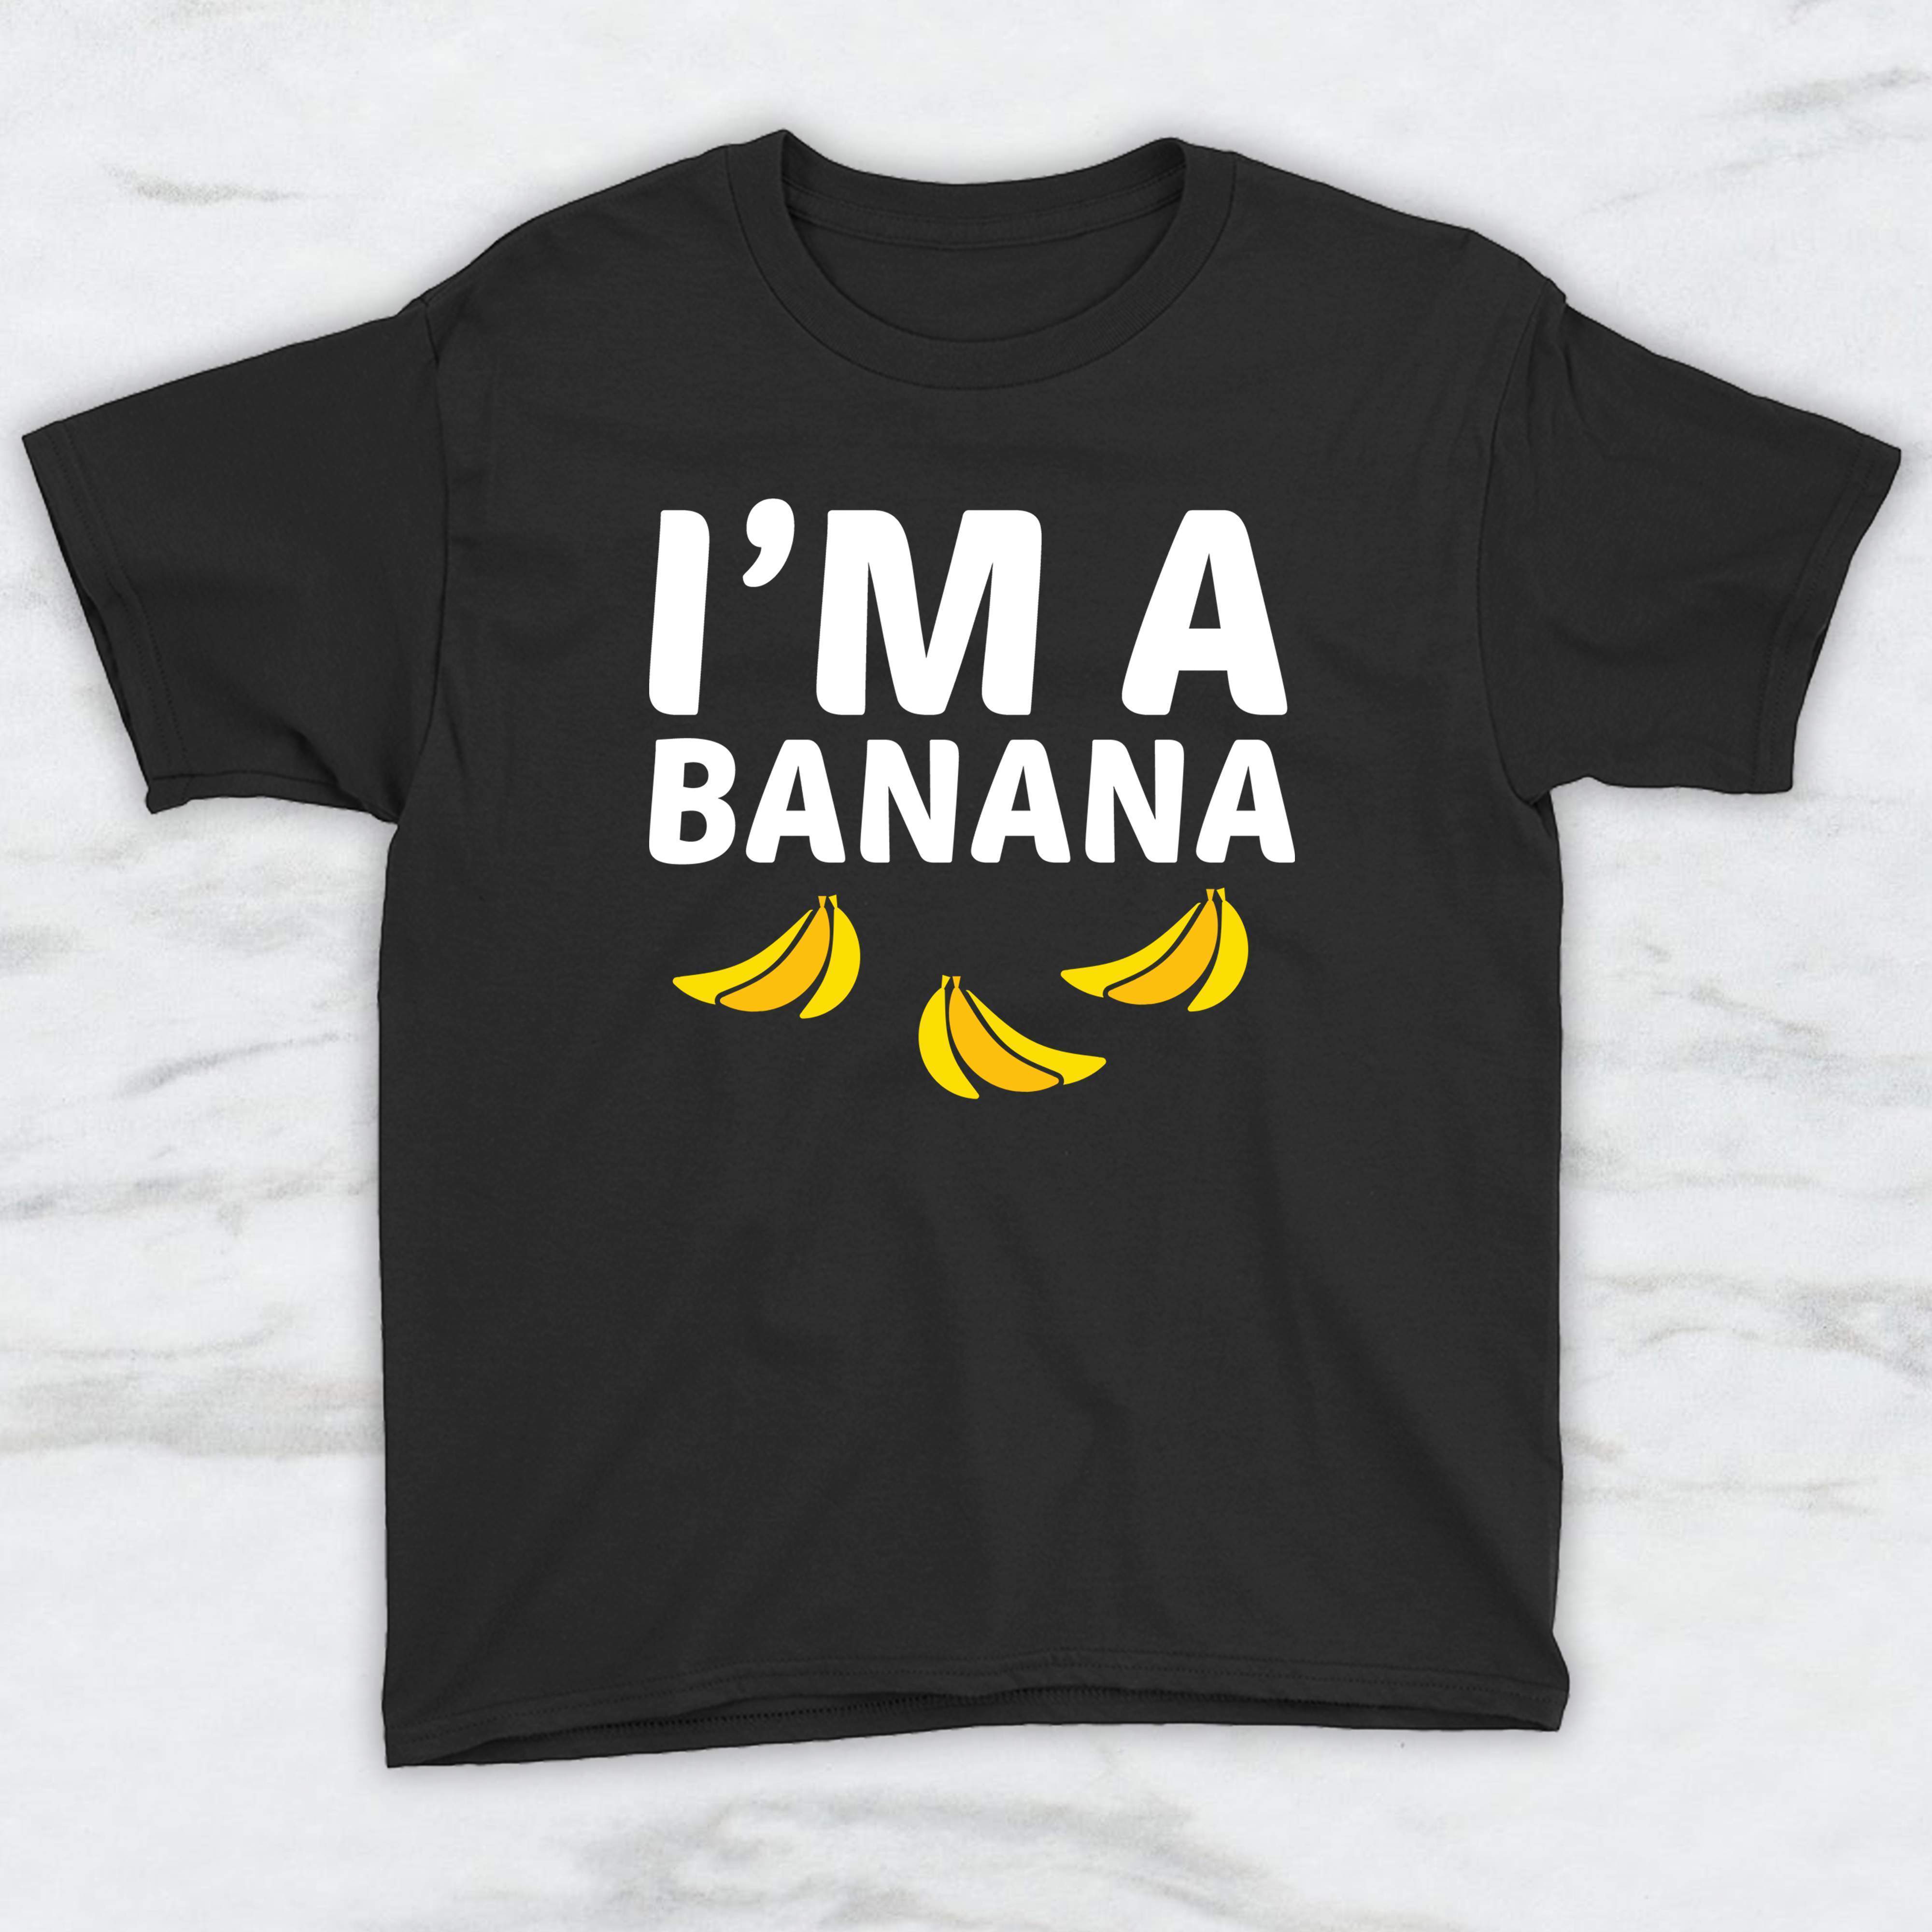 I'm A Banana T-Shirt, Tank Top, Hoodie For Men Women & Kids